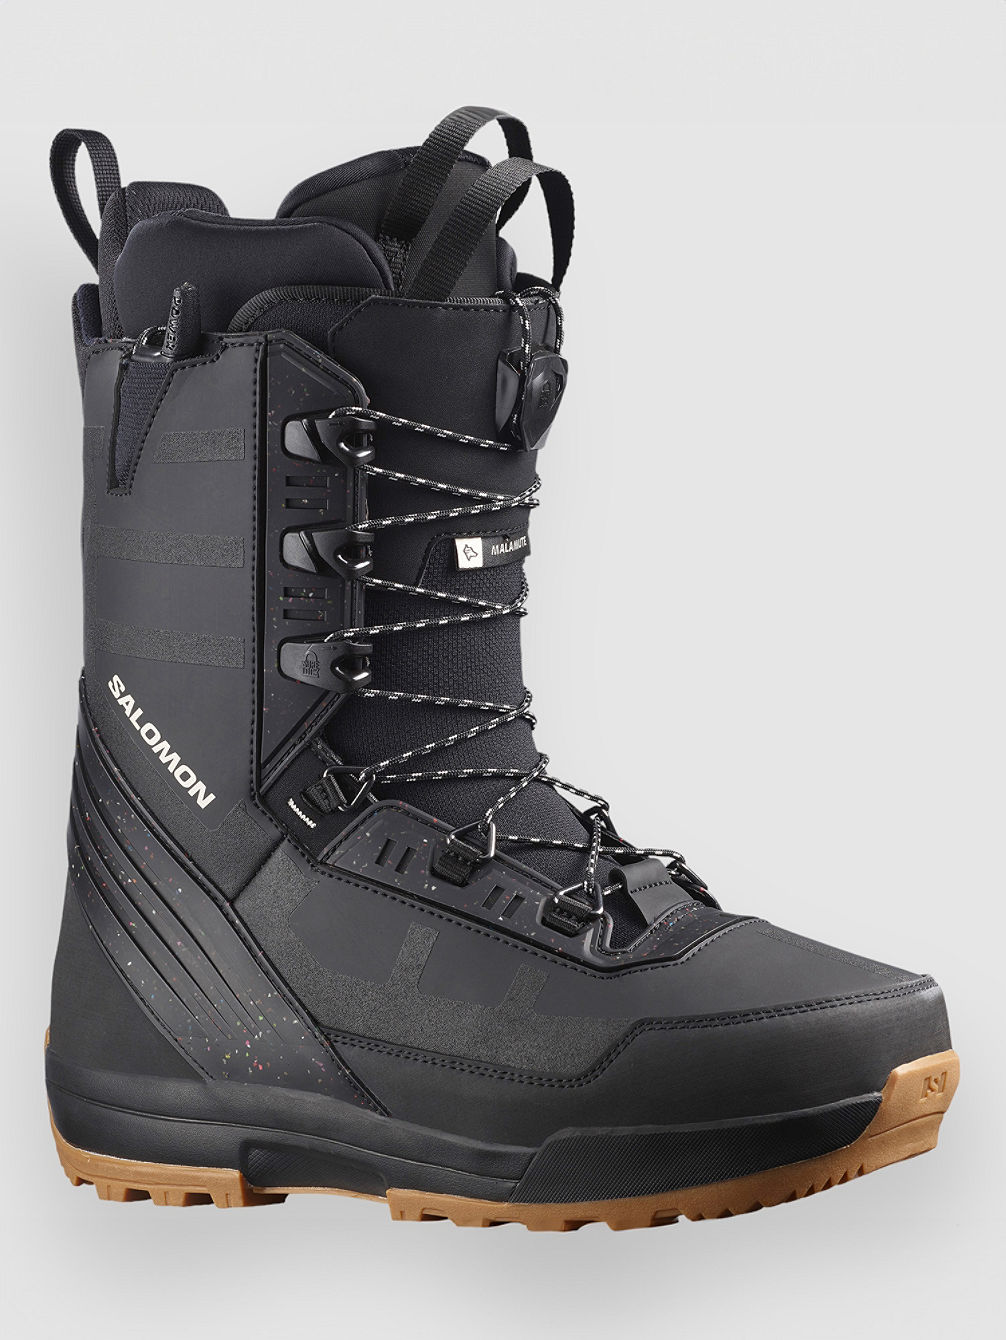 Malamute 2023 Snowboard Boots